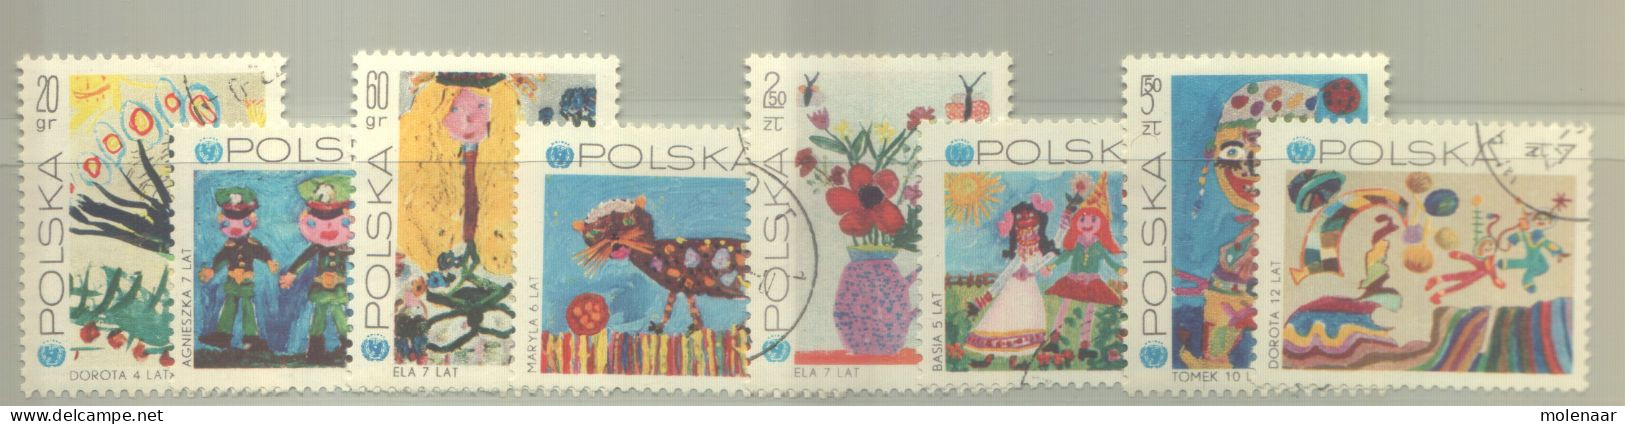 Postzegels > Europa > Polen > 1944-.... Republiek > 1981-90 > Gebruikt 2075-2082 (12193) - Oblitérés